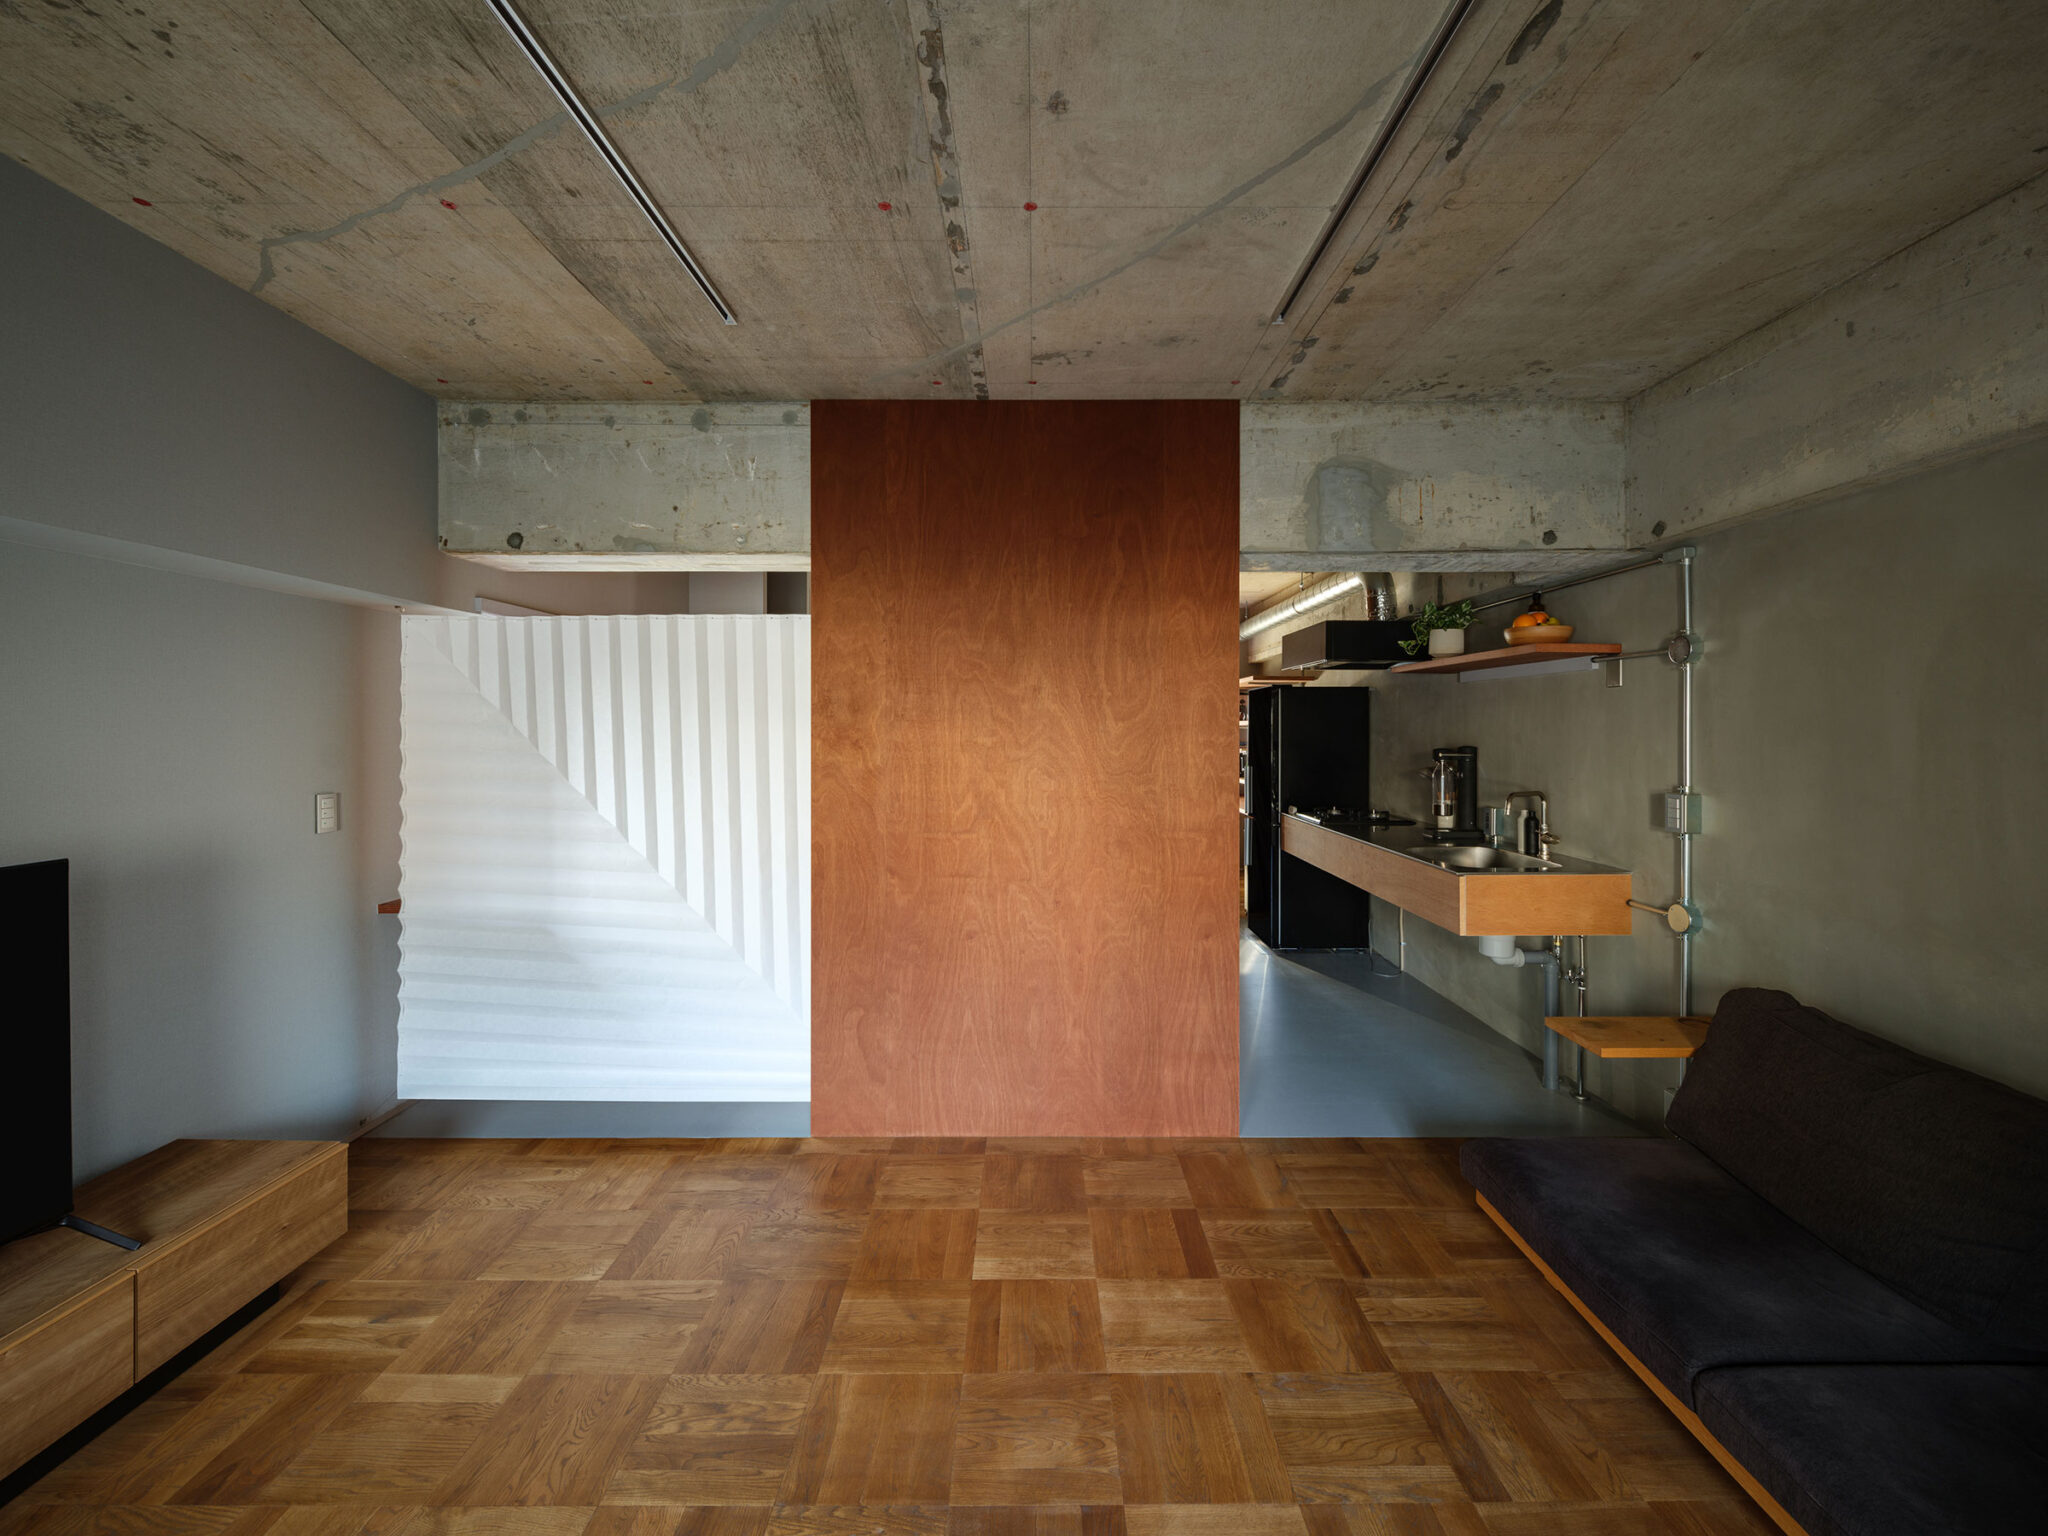 梅岡恒治と山田美紀による、東京・中央区の住戸改修「SLIT」。在宅勤務 